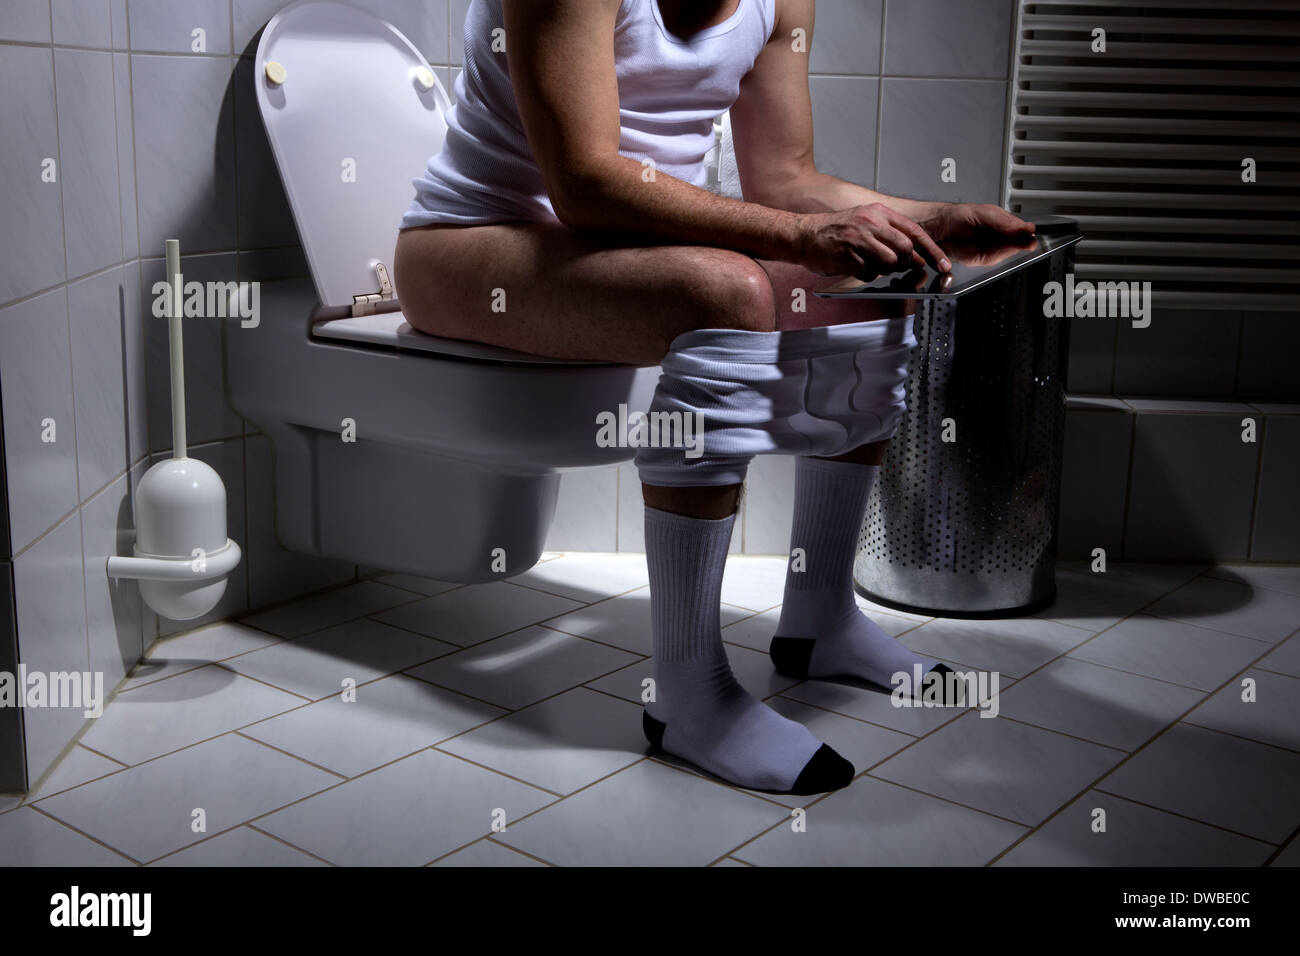 Deutschland, Mann sitzt auf Toilette, mit digital-Tablette Stockfotografie  - Alamy